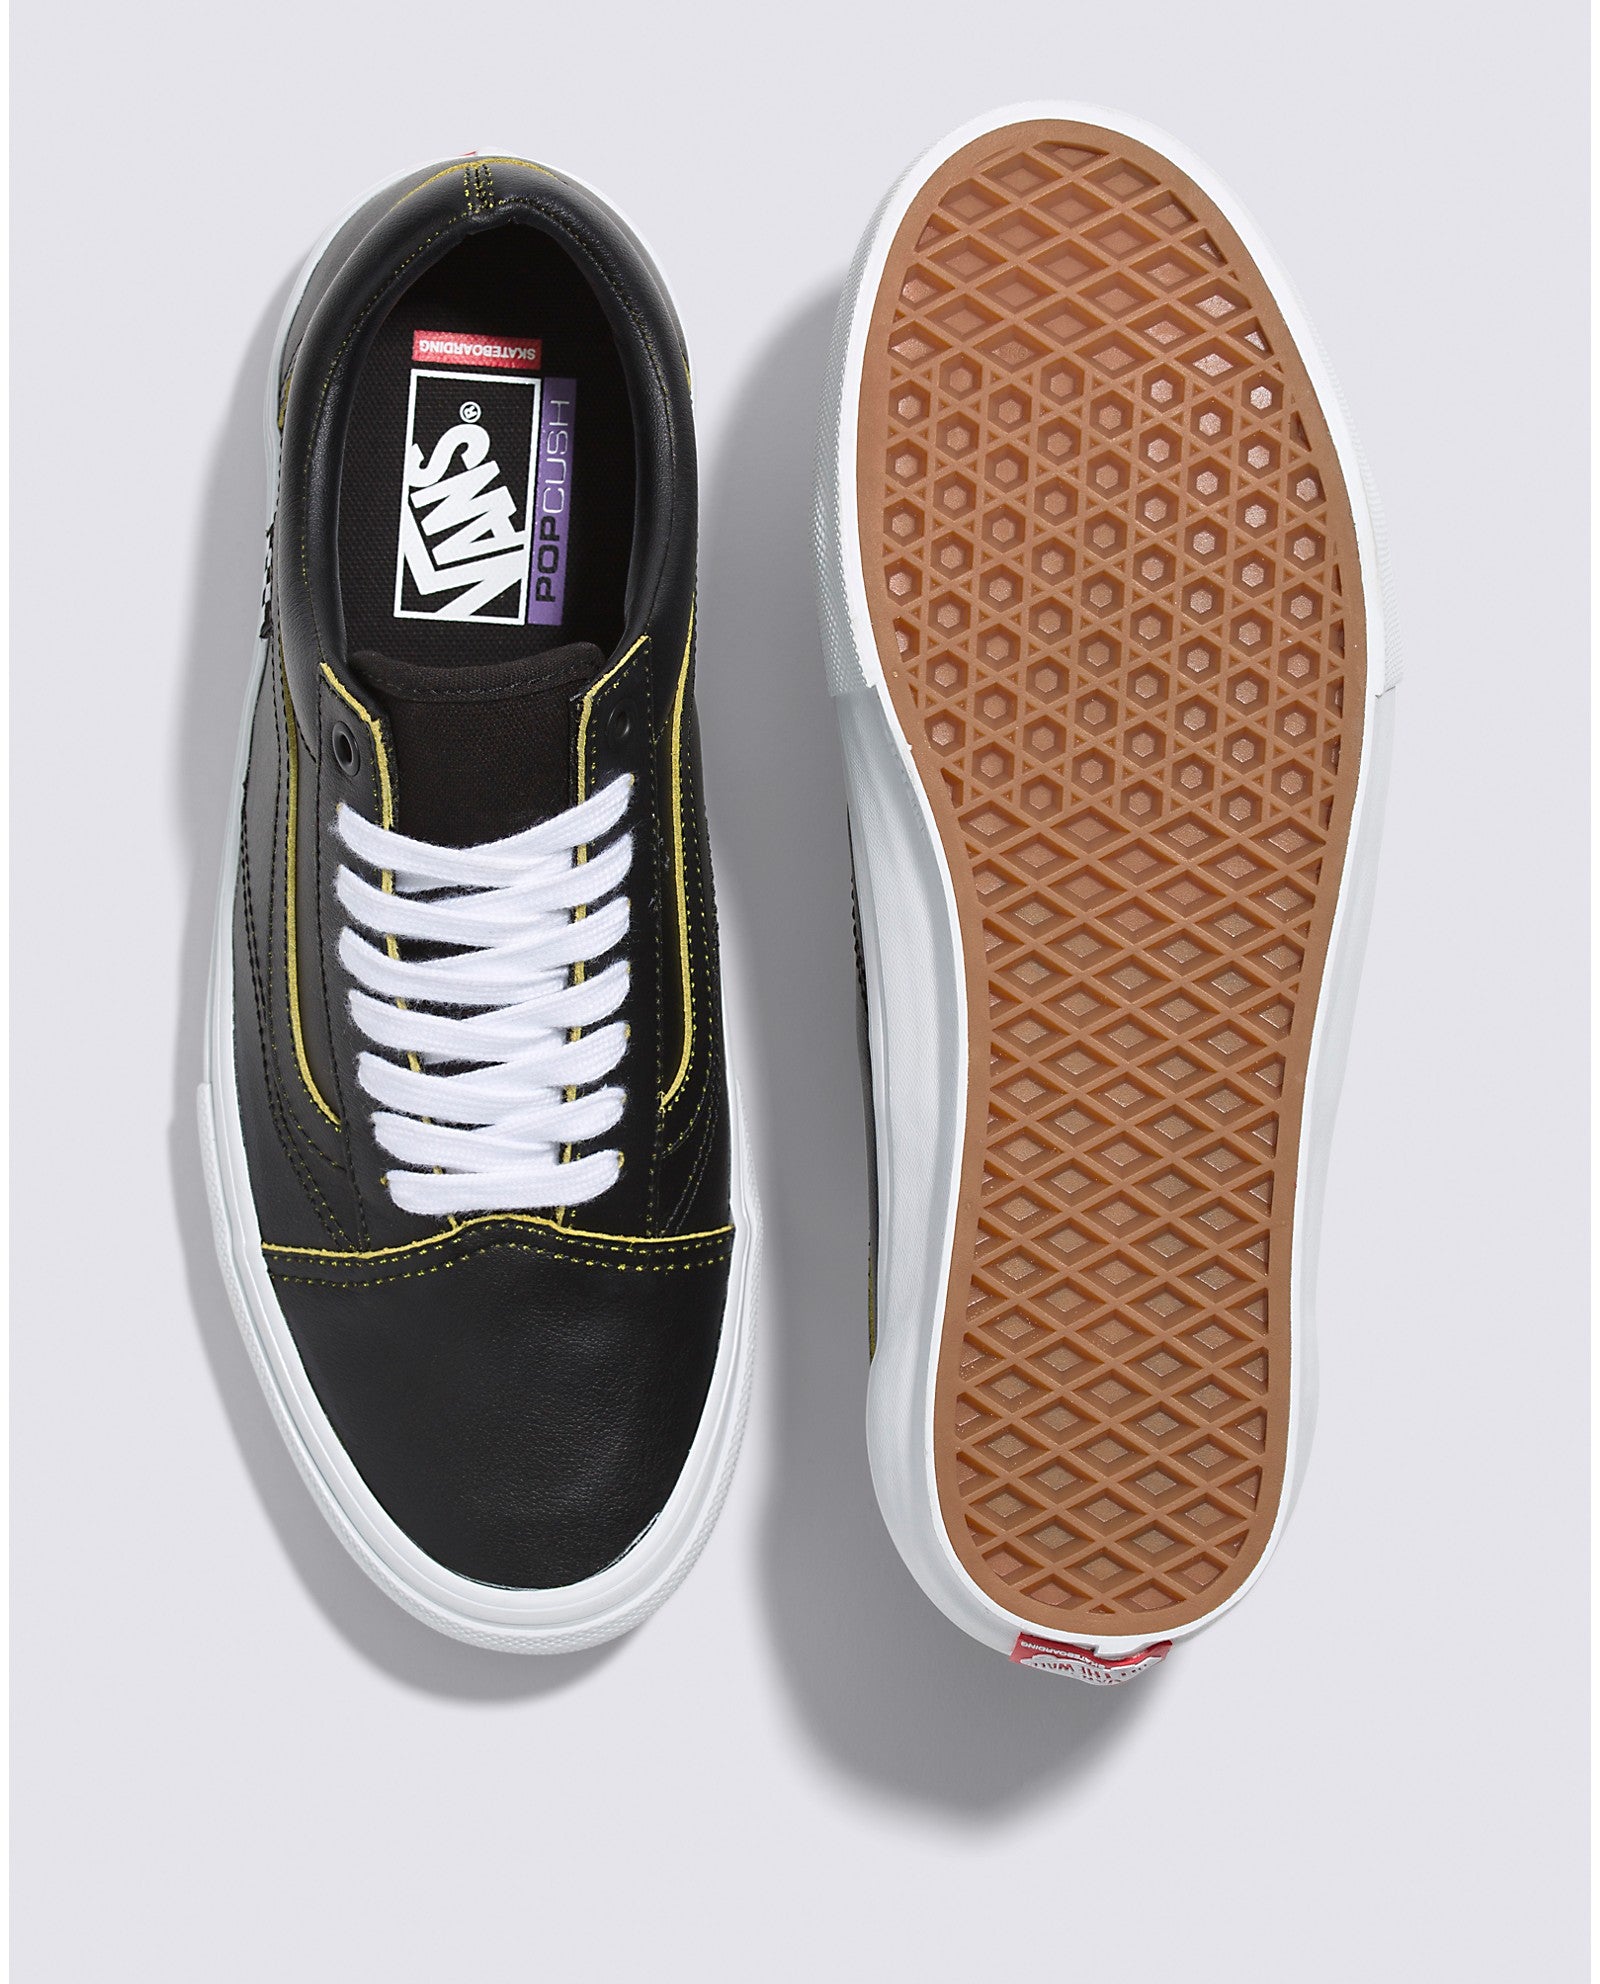 Black/Lime Wear-Away Vans Skate Old Skool Shoe Top/Bottom